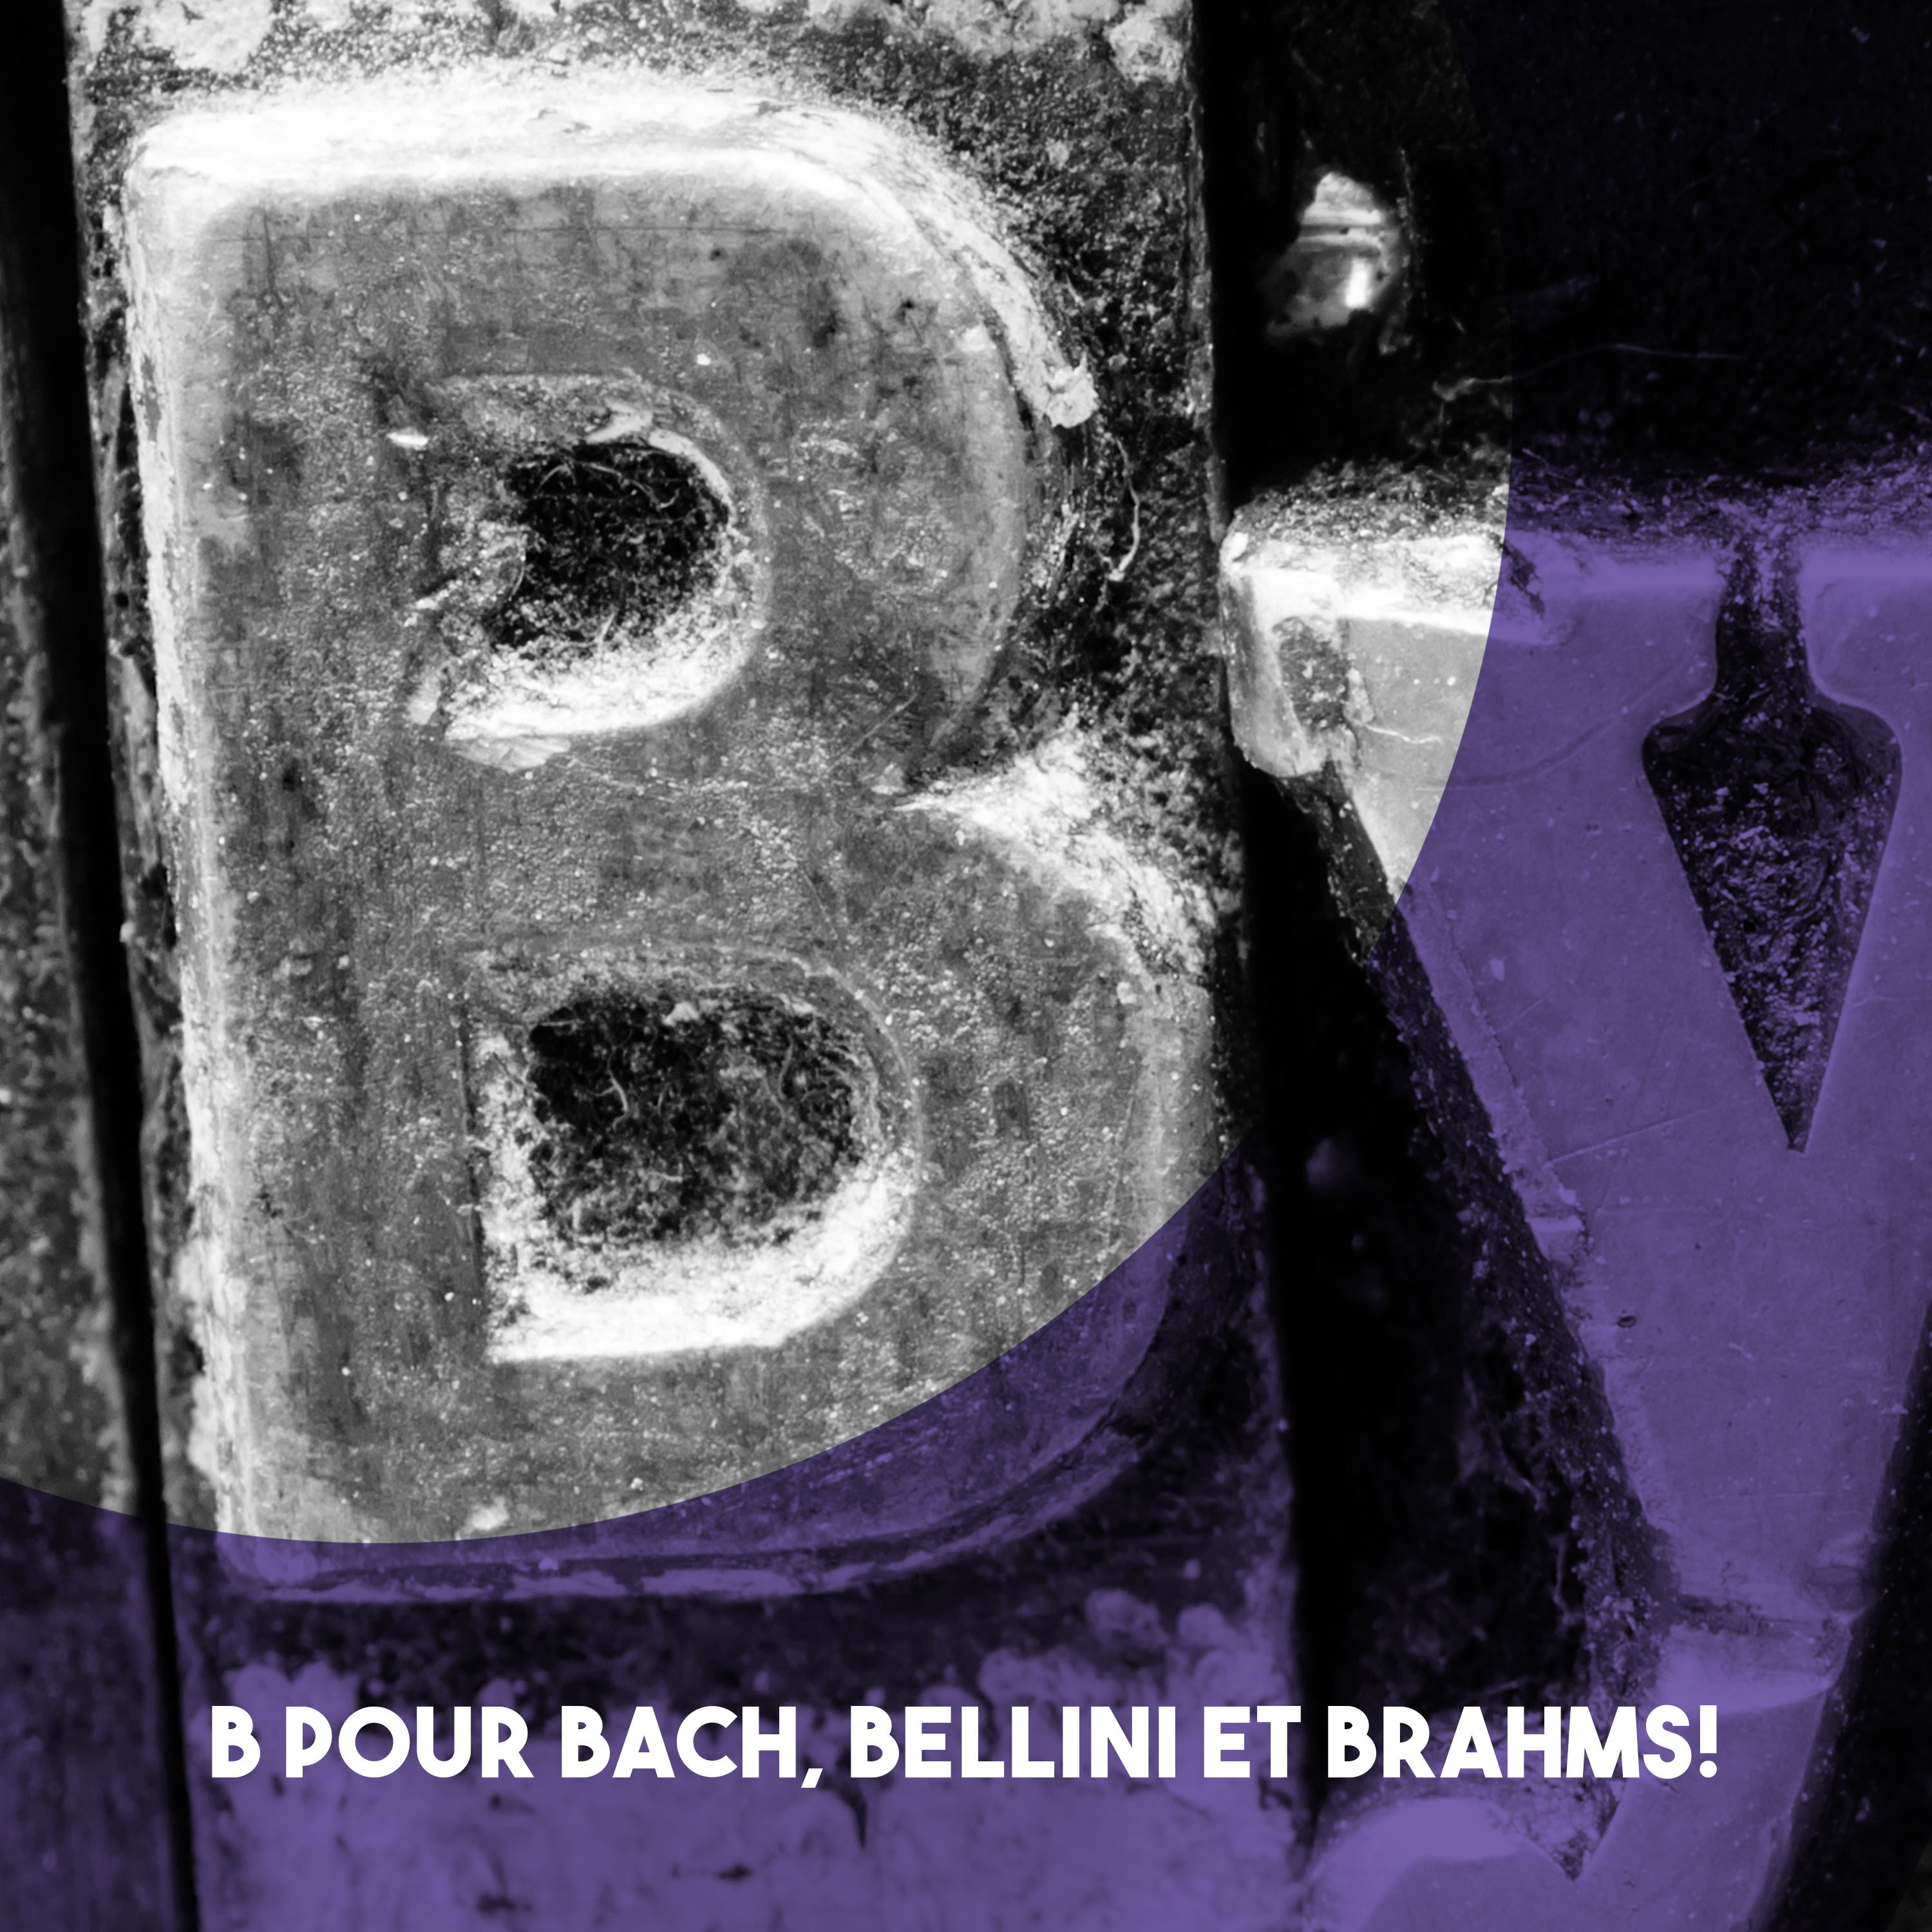 B pour Bach, Bellini et Brahms!